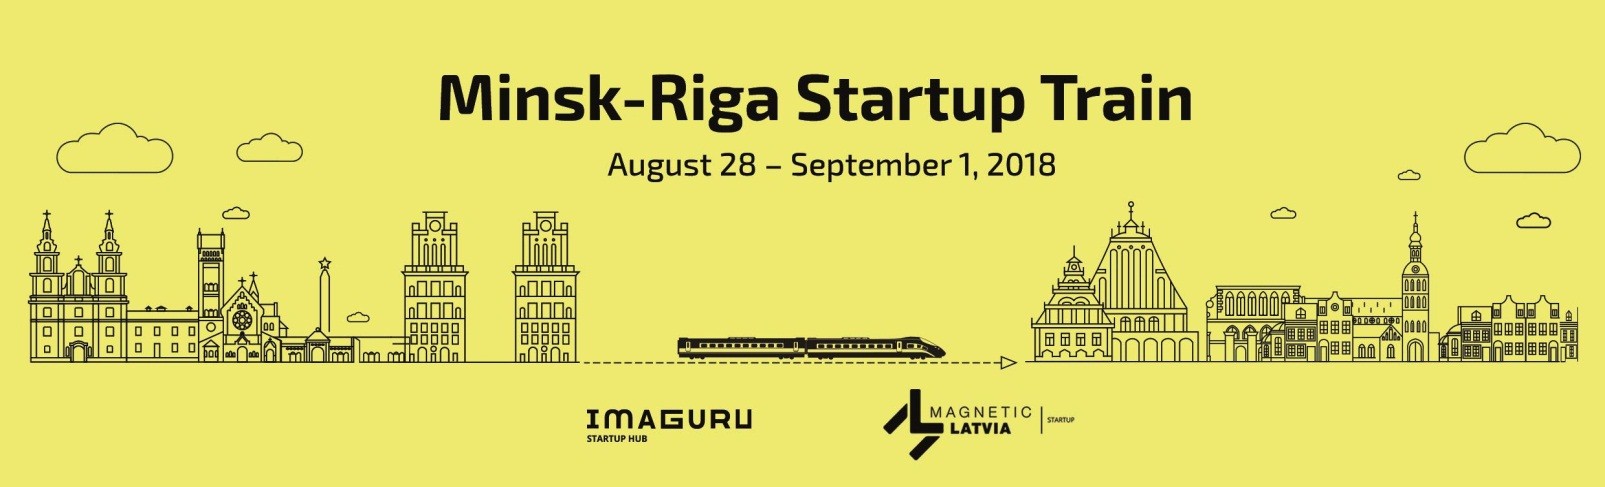 Minsk-Riga Startup Train